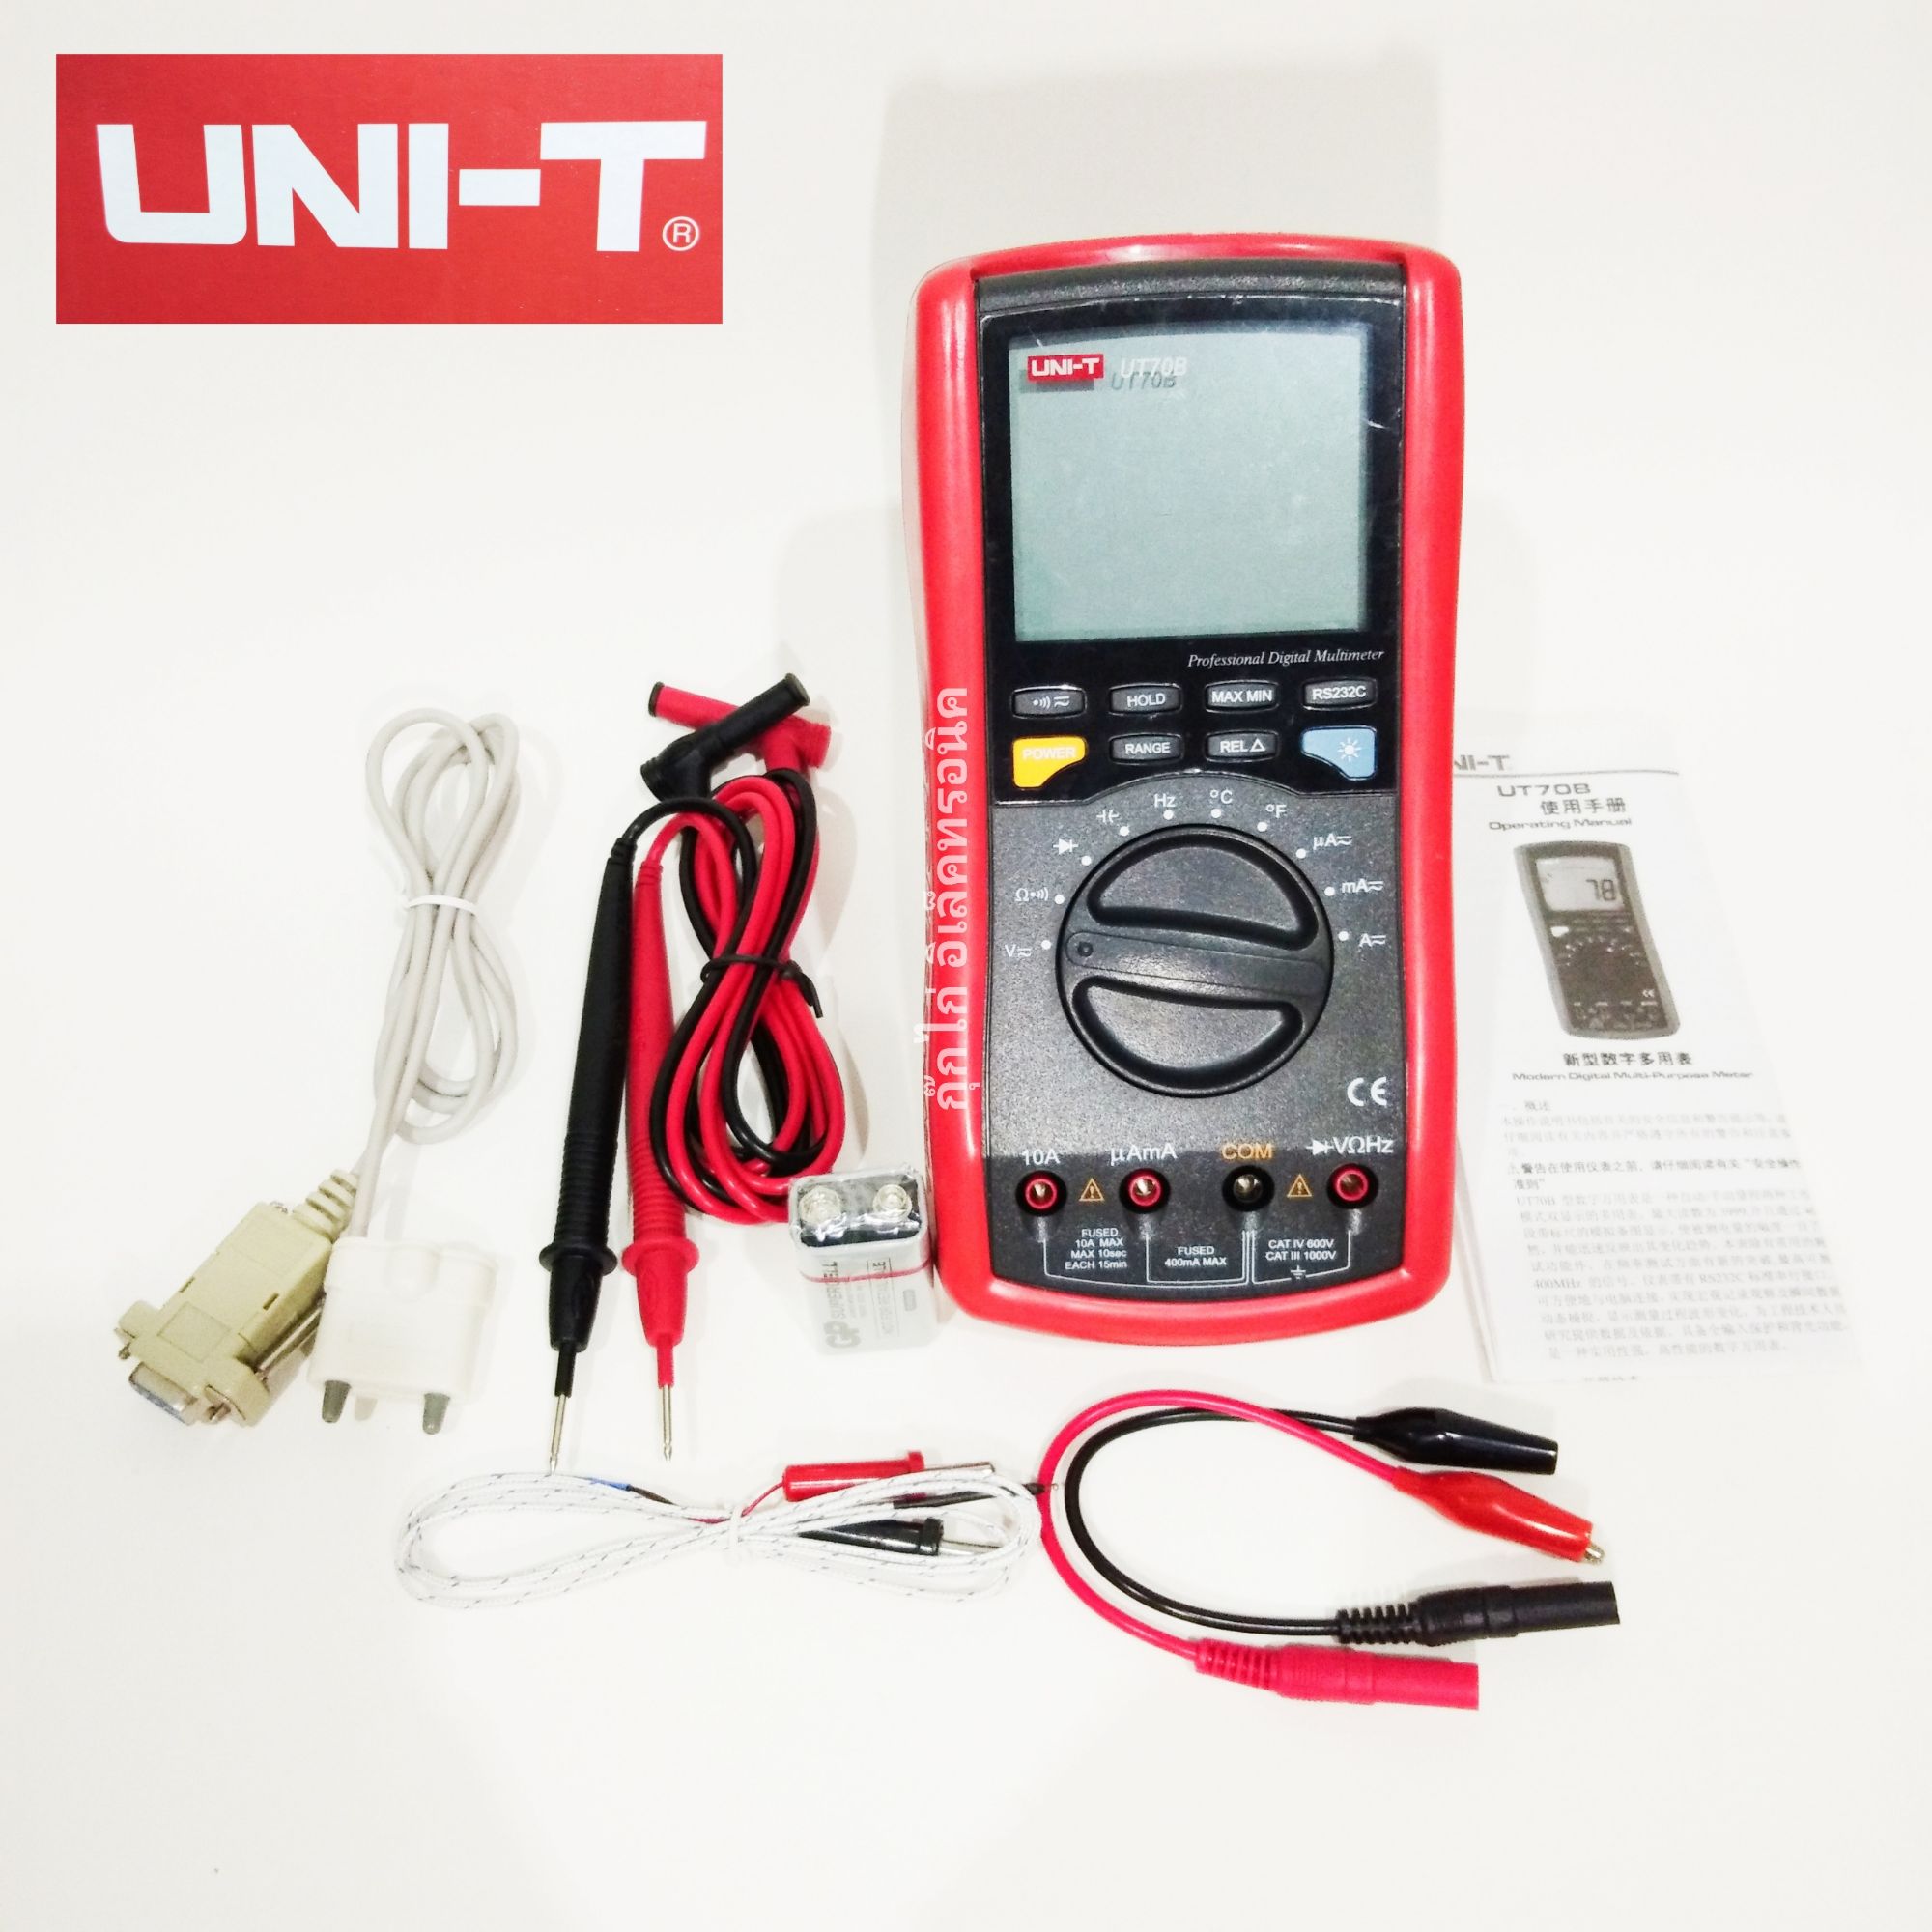 มิเตอร์วัดไฟ UNI-T UT70B ดิจิตอลมัลติมิเตอร์โวลต์ แอมป์ โอห์มชั่วคราวประจุทดสอบ